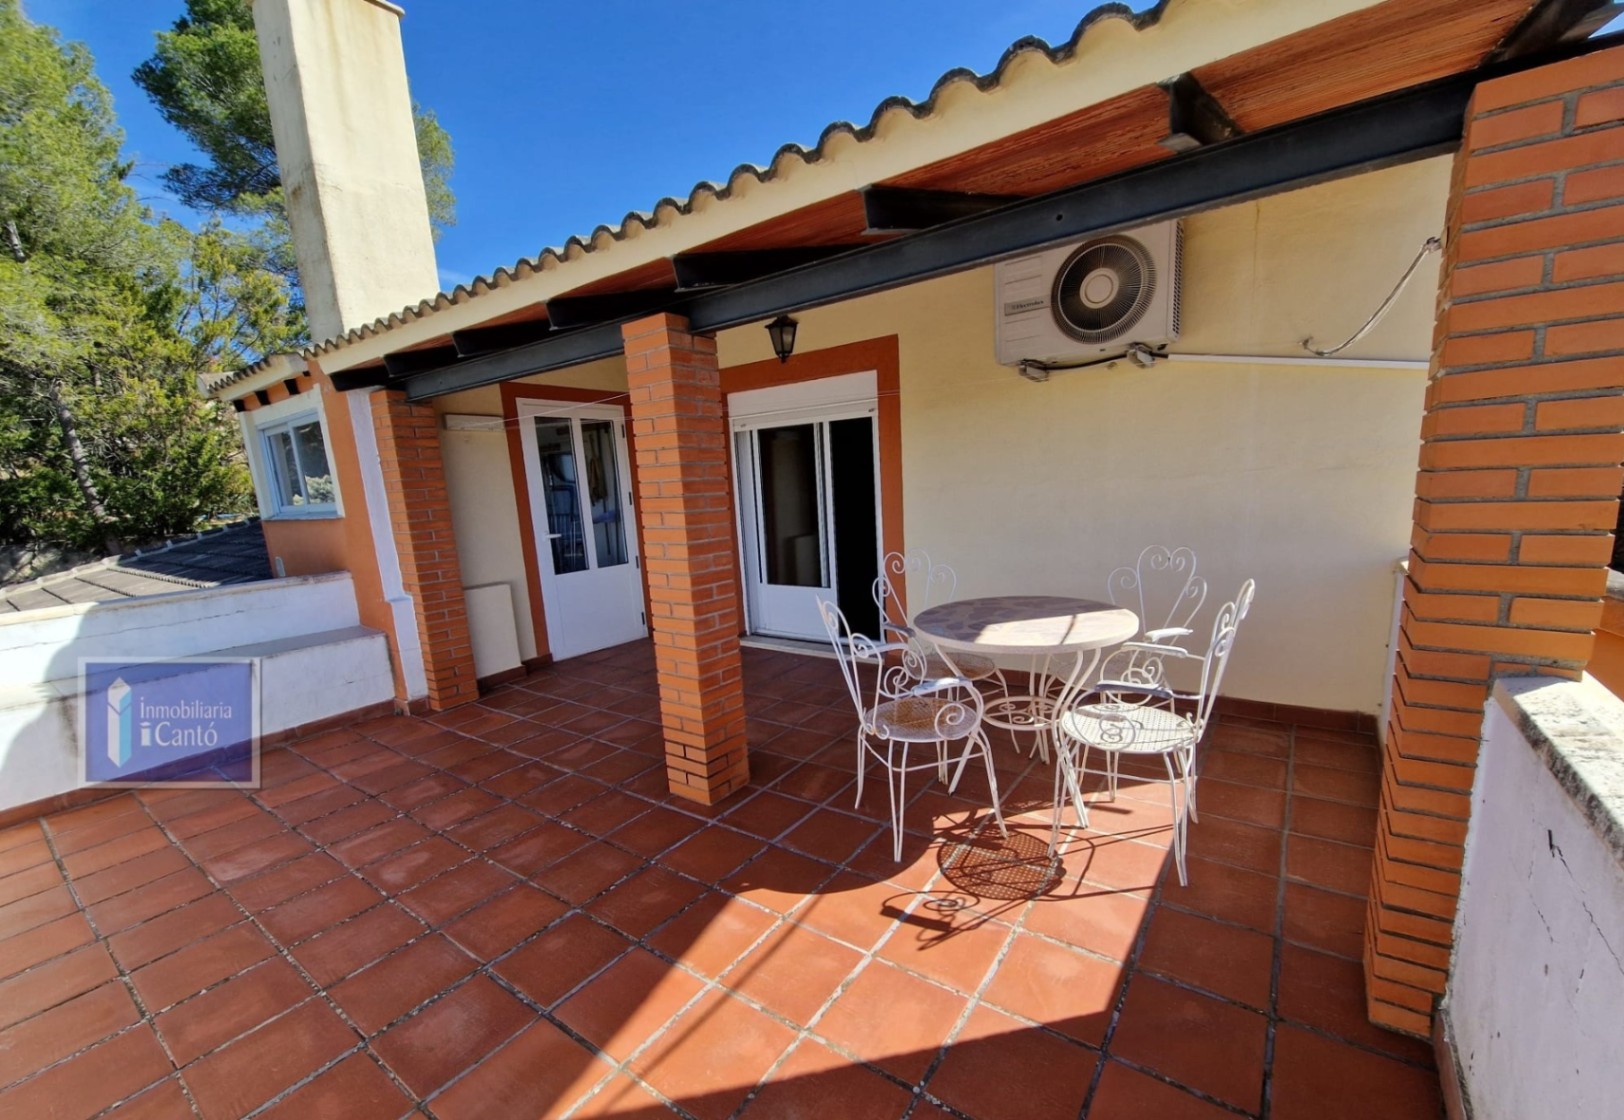 Villa à vendre dans la région de Baradello